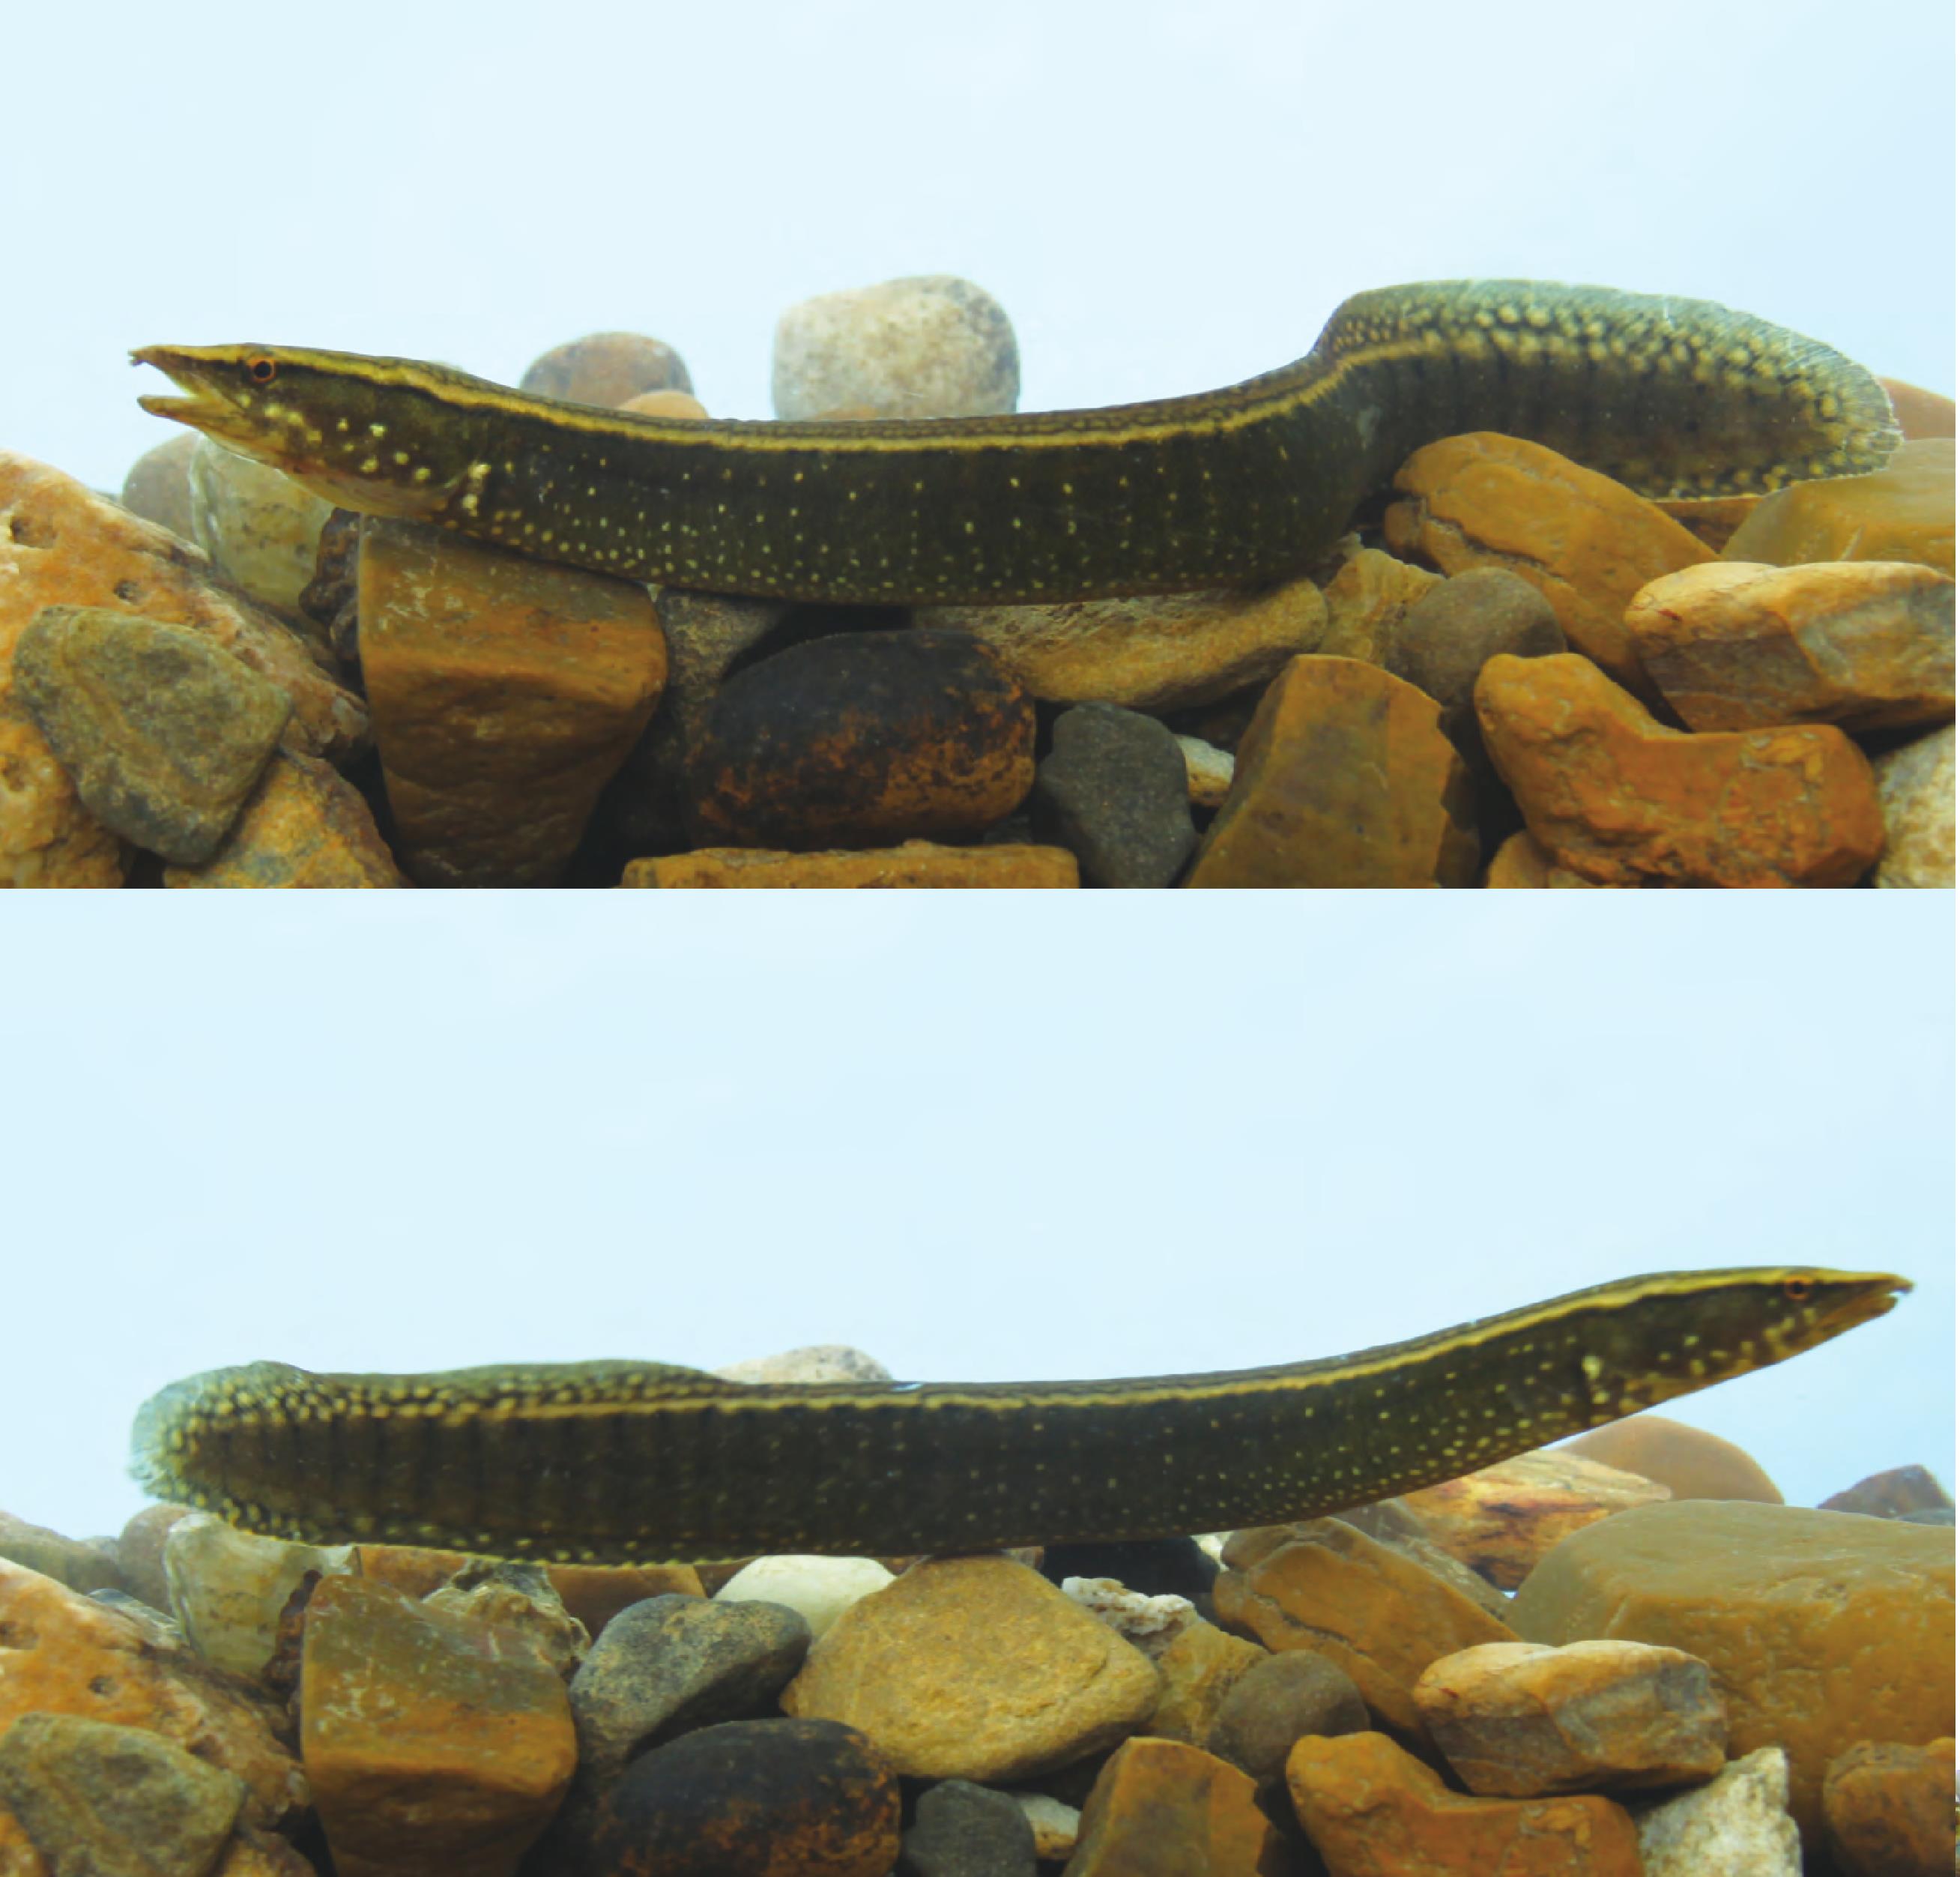 刺鳅 Mastacembelus aculeatus - 物种库 - 国家动物标本资源库